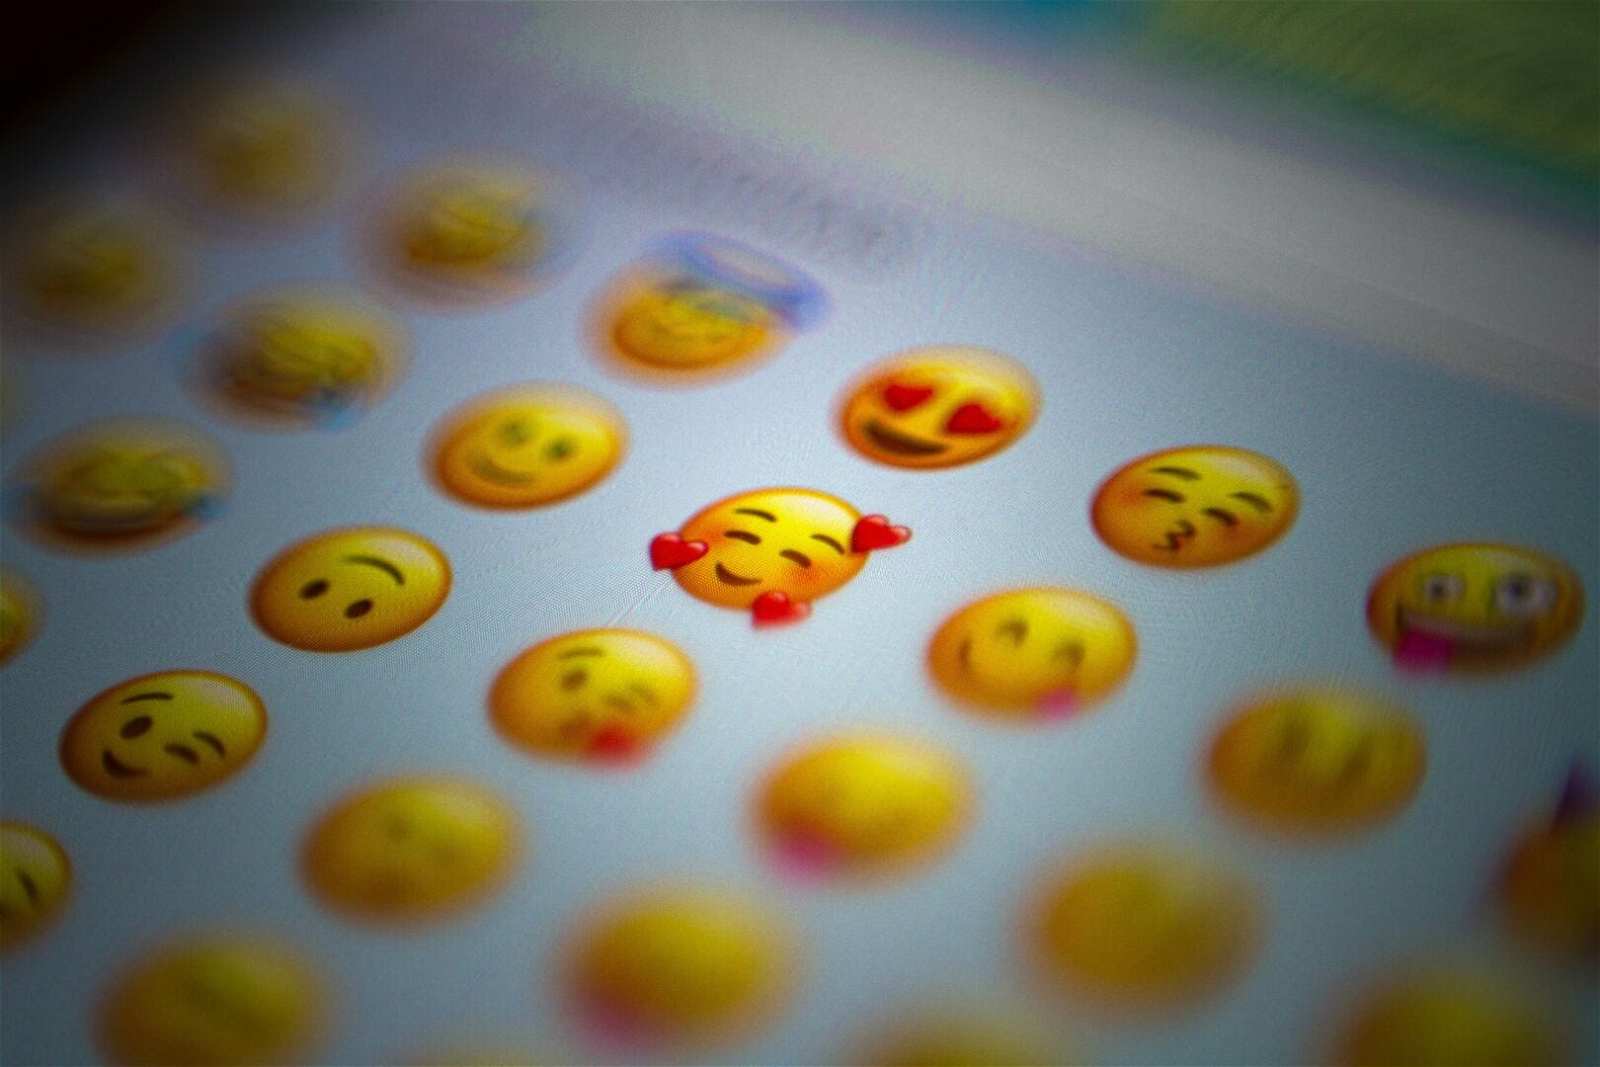 Asunto del correo electrónico emoji